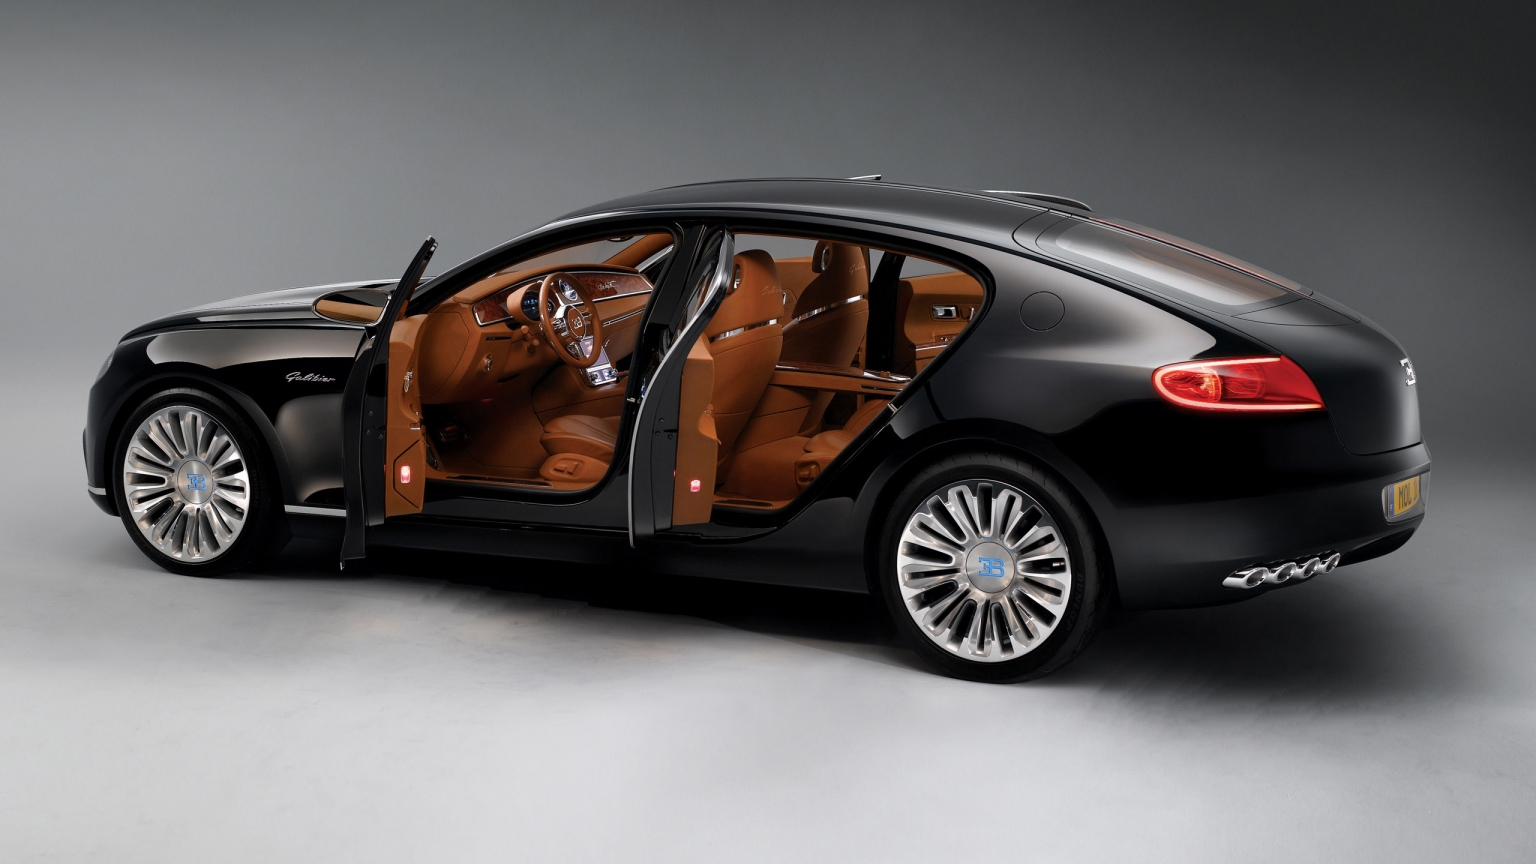 Bugatti 16C Galibier Concept for 1536 x 864 HDTV resolution